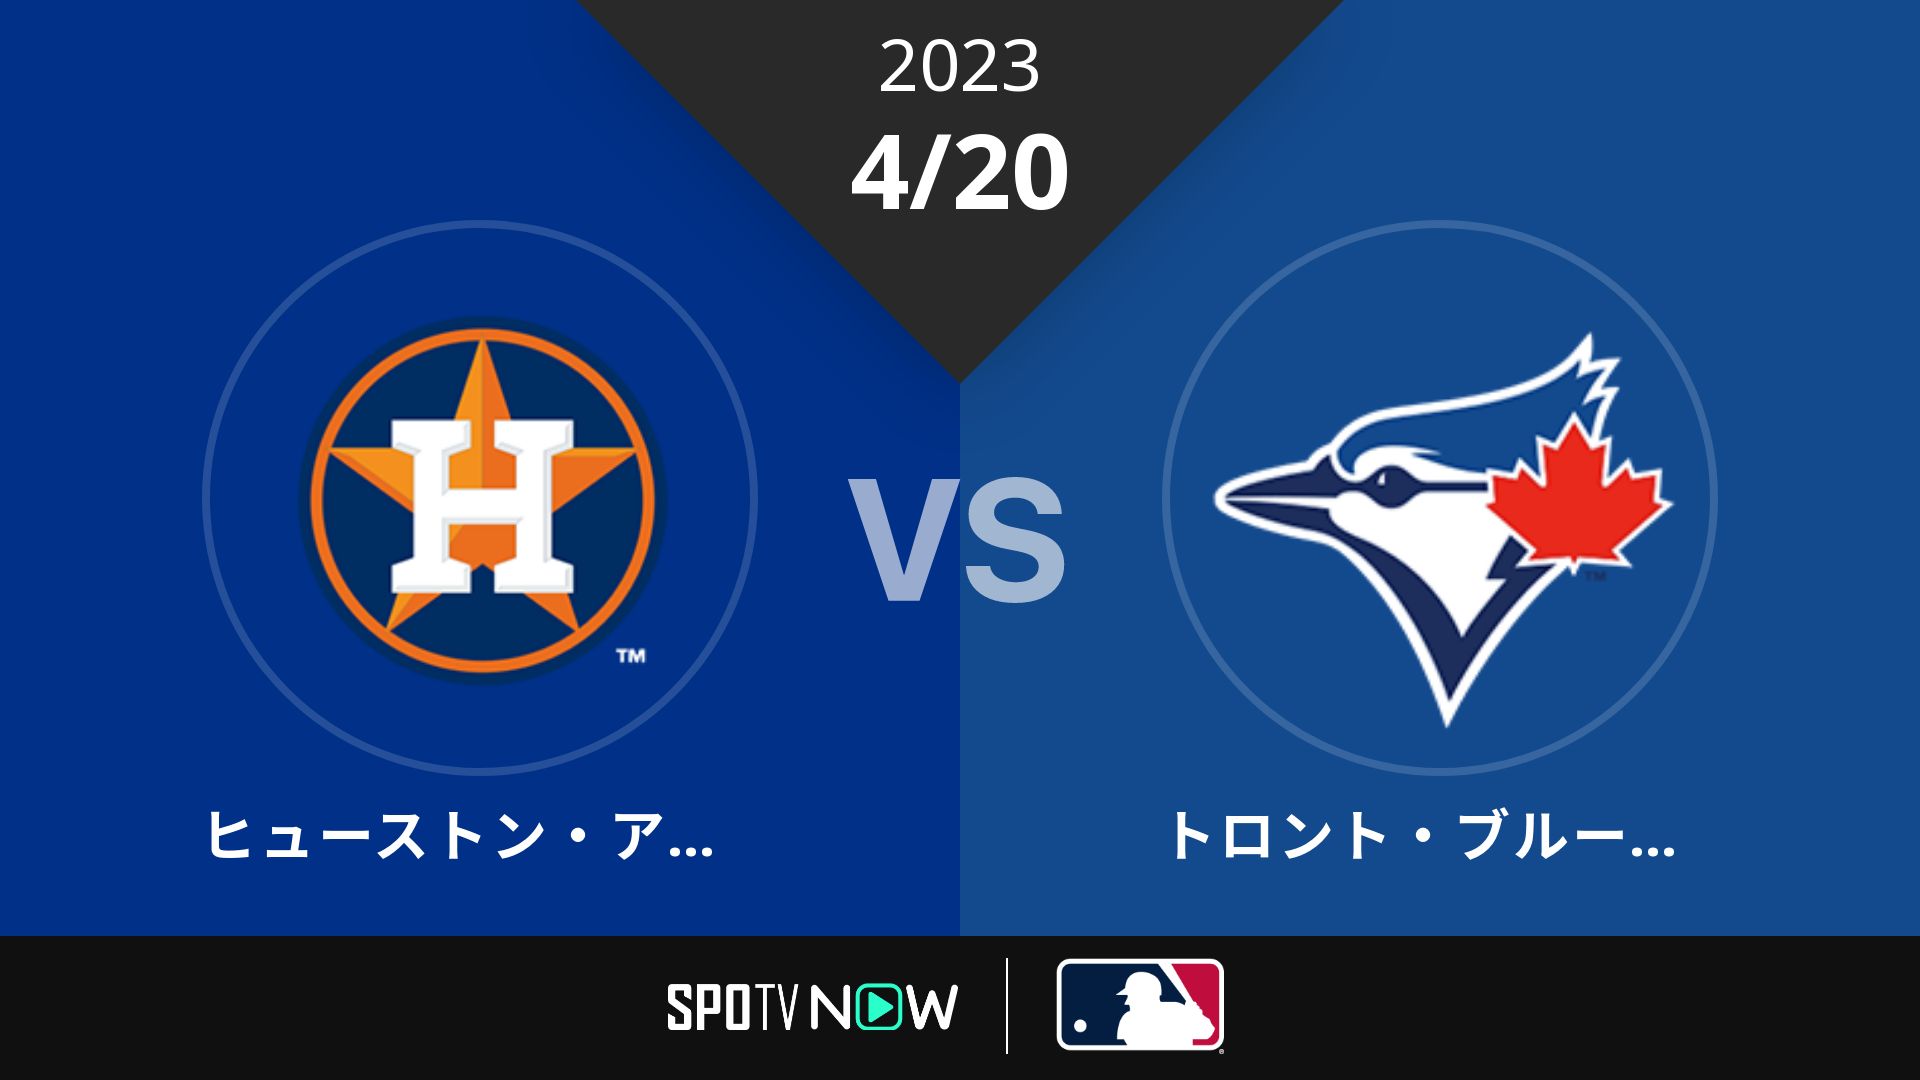 2023/4/20 アストロズ vs ブルージェイズ [MLB]